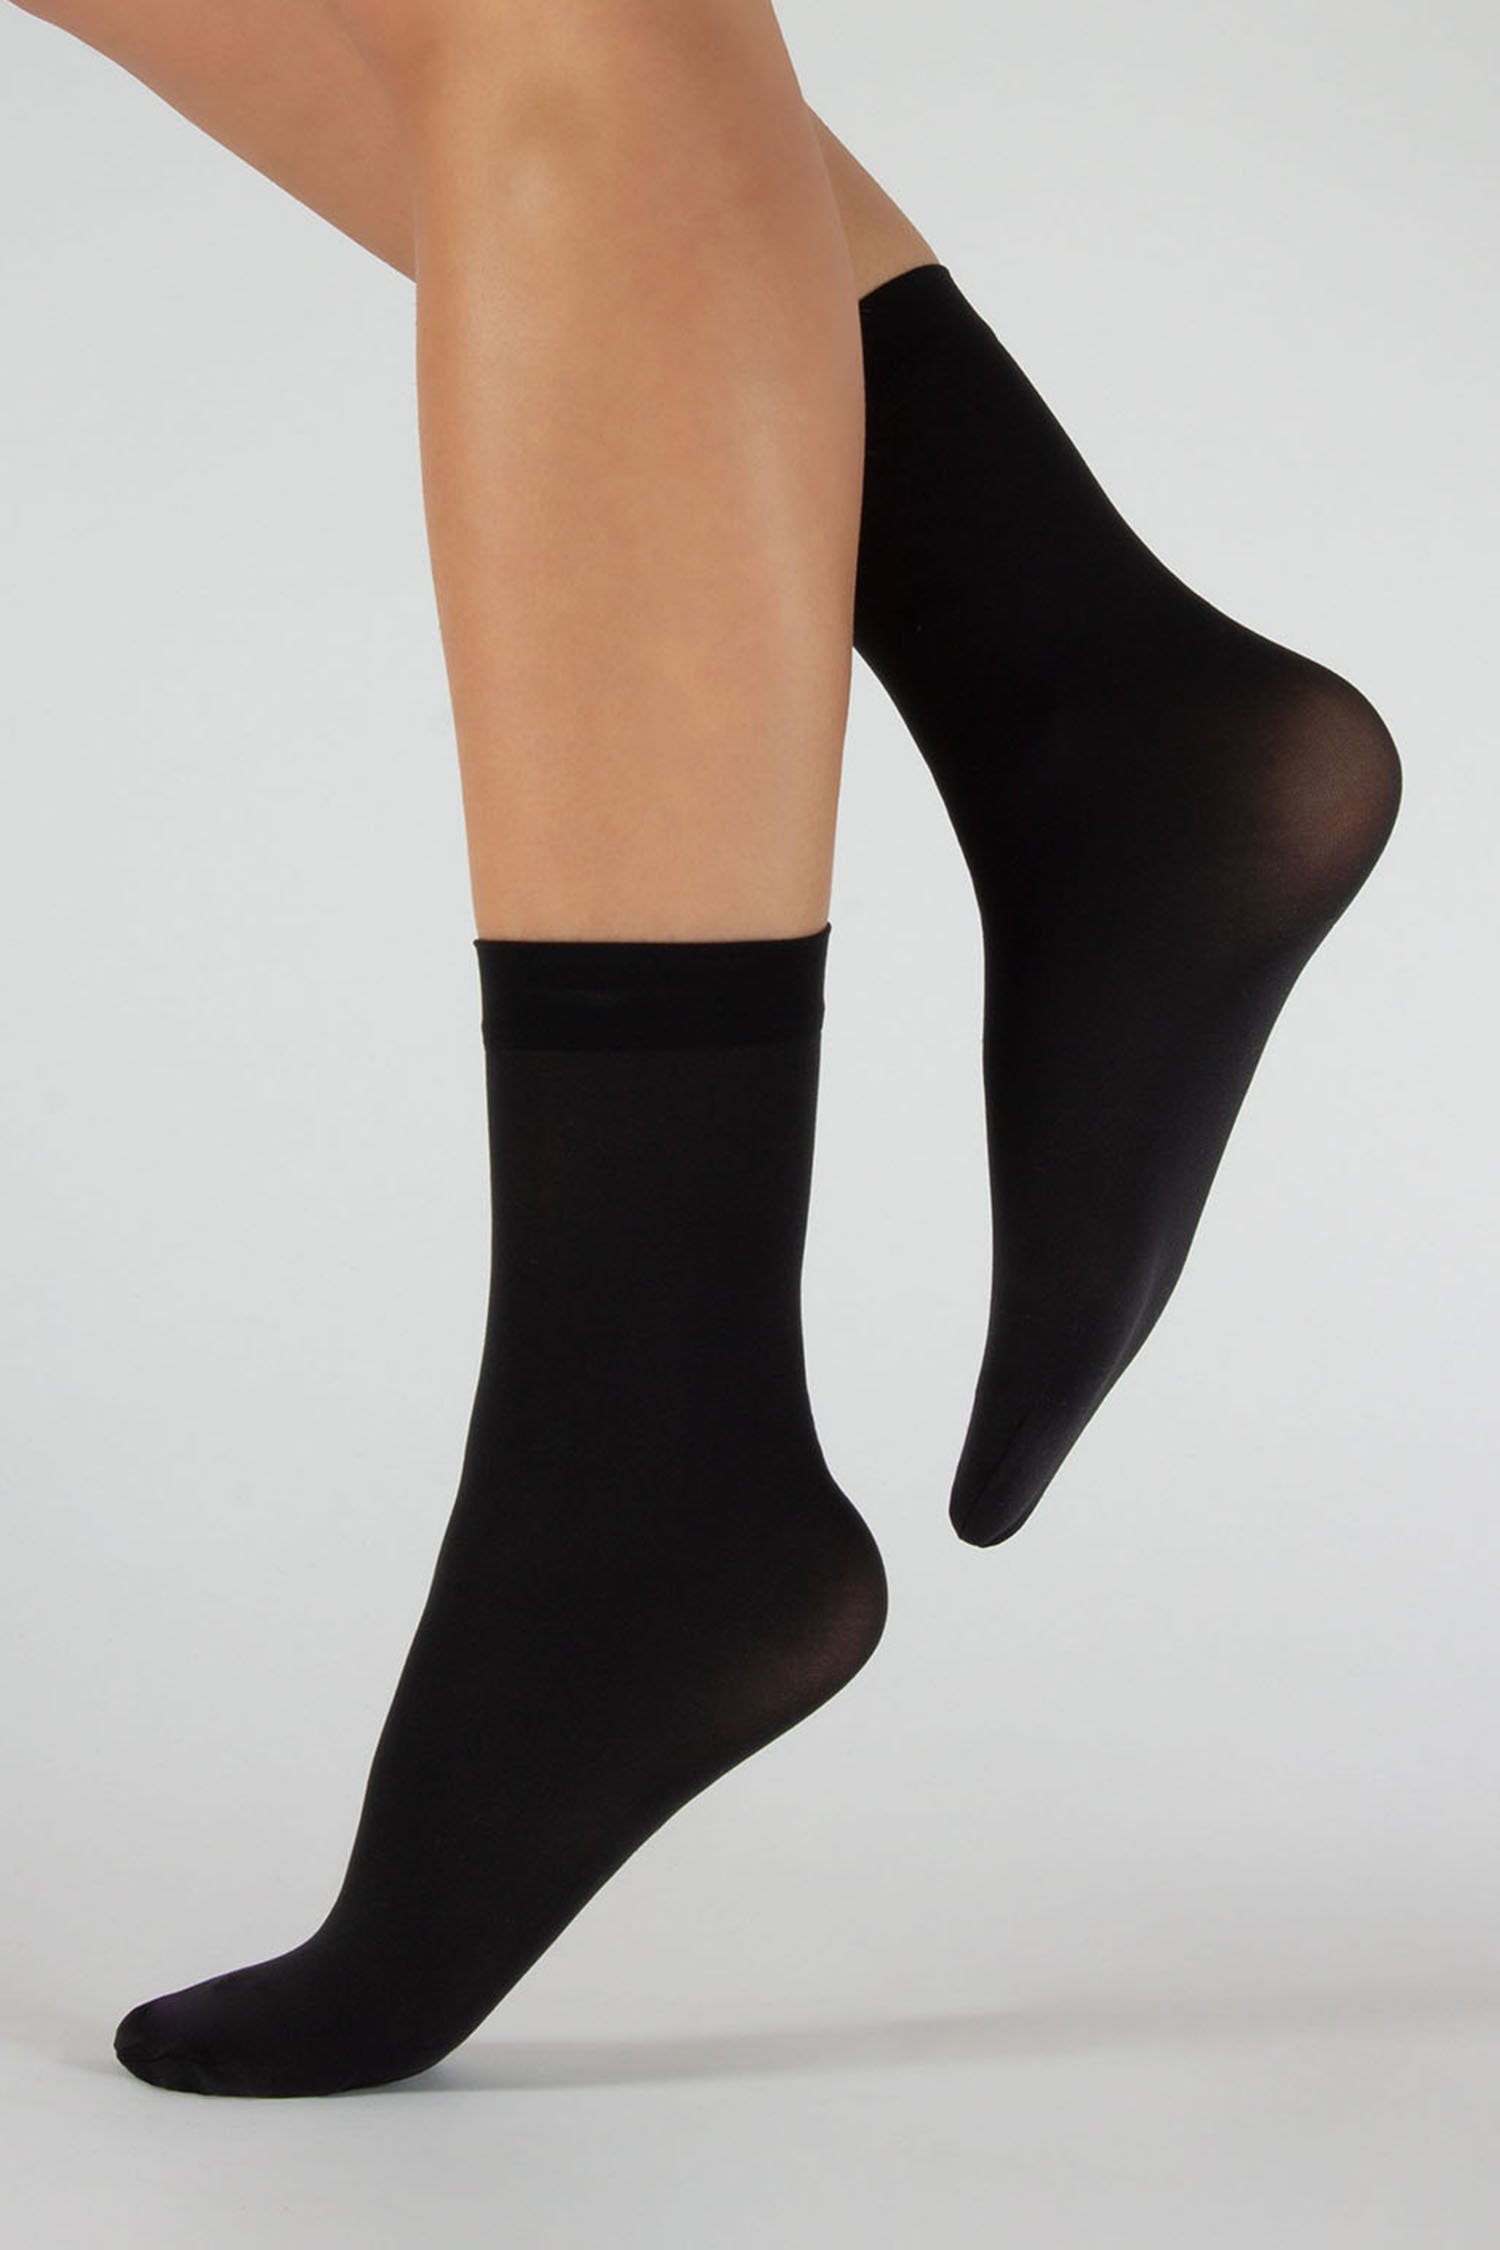 Chaussettes noires en nylon - 2 paires de Cette pour Femmes